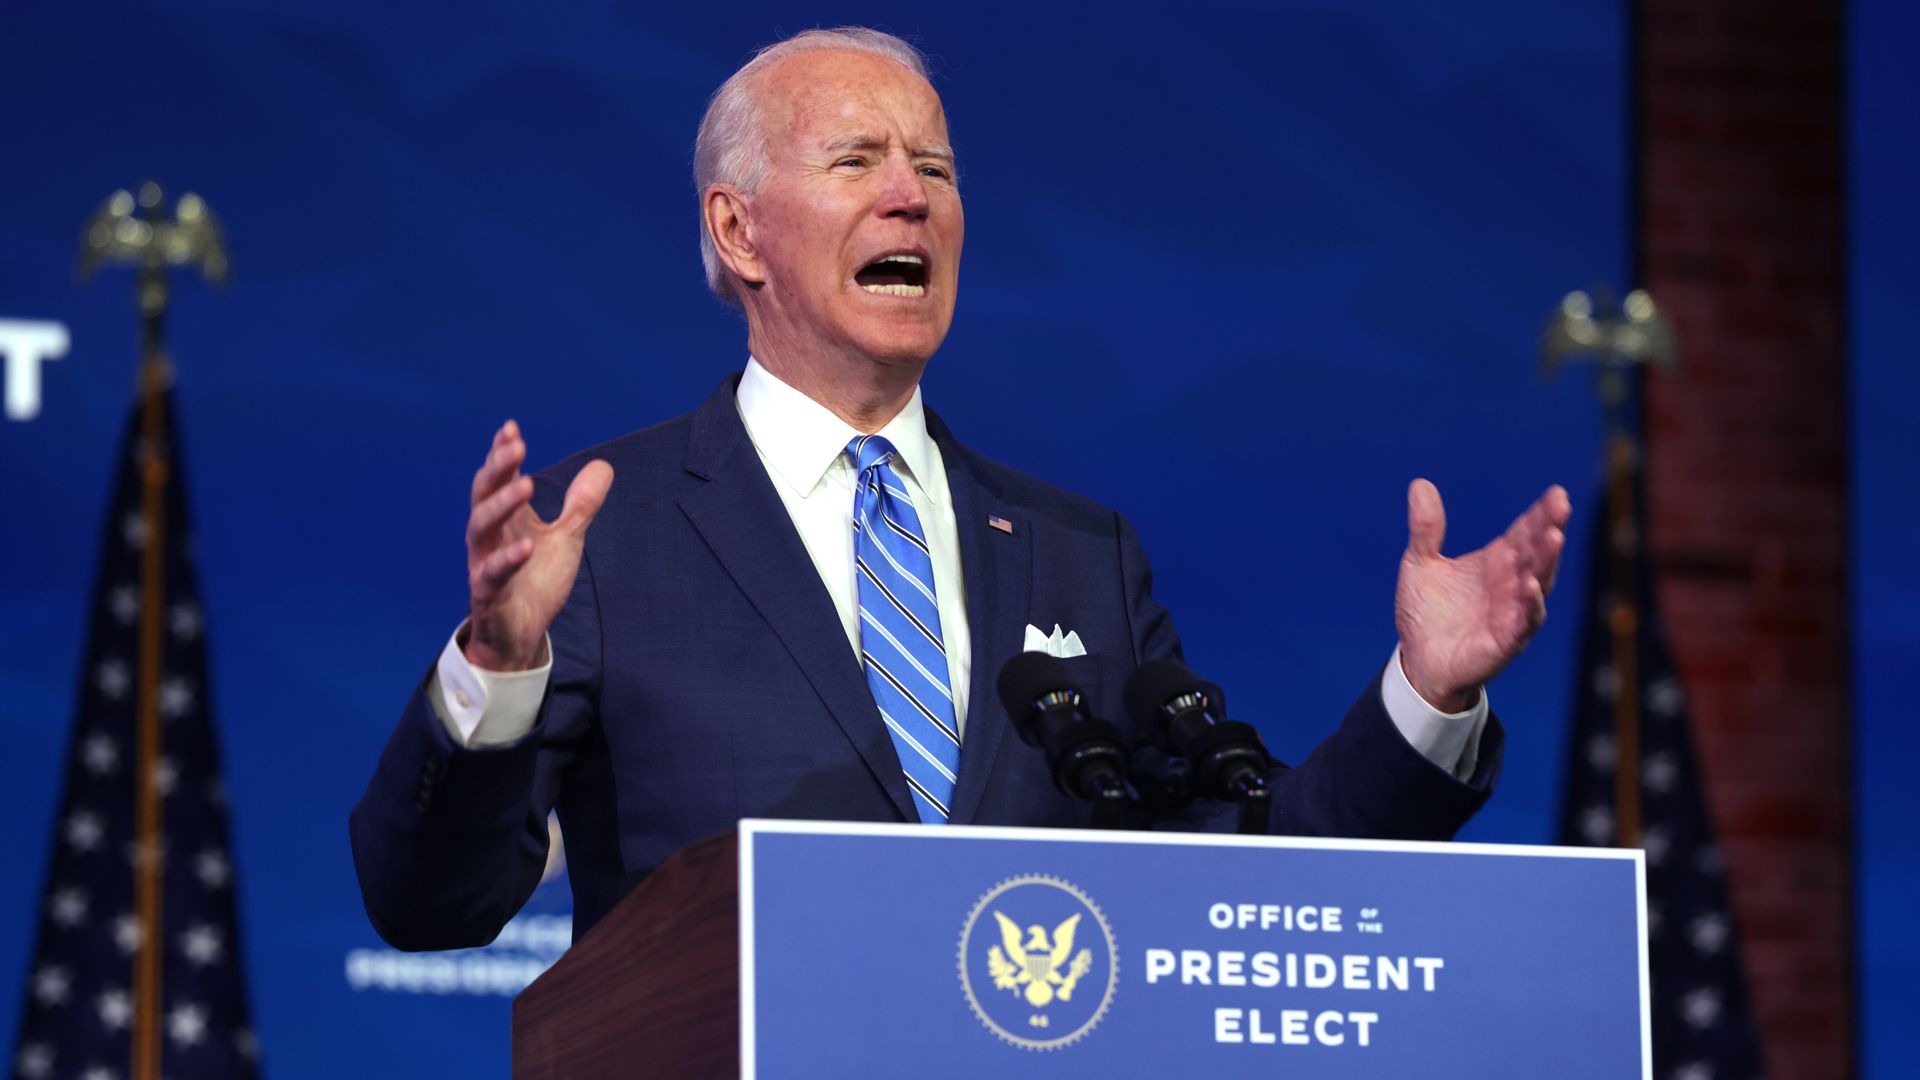 Joe Biden is seen delivering a speech focused on his coronavirus relief program.